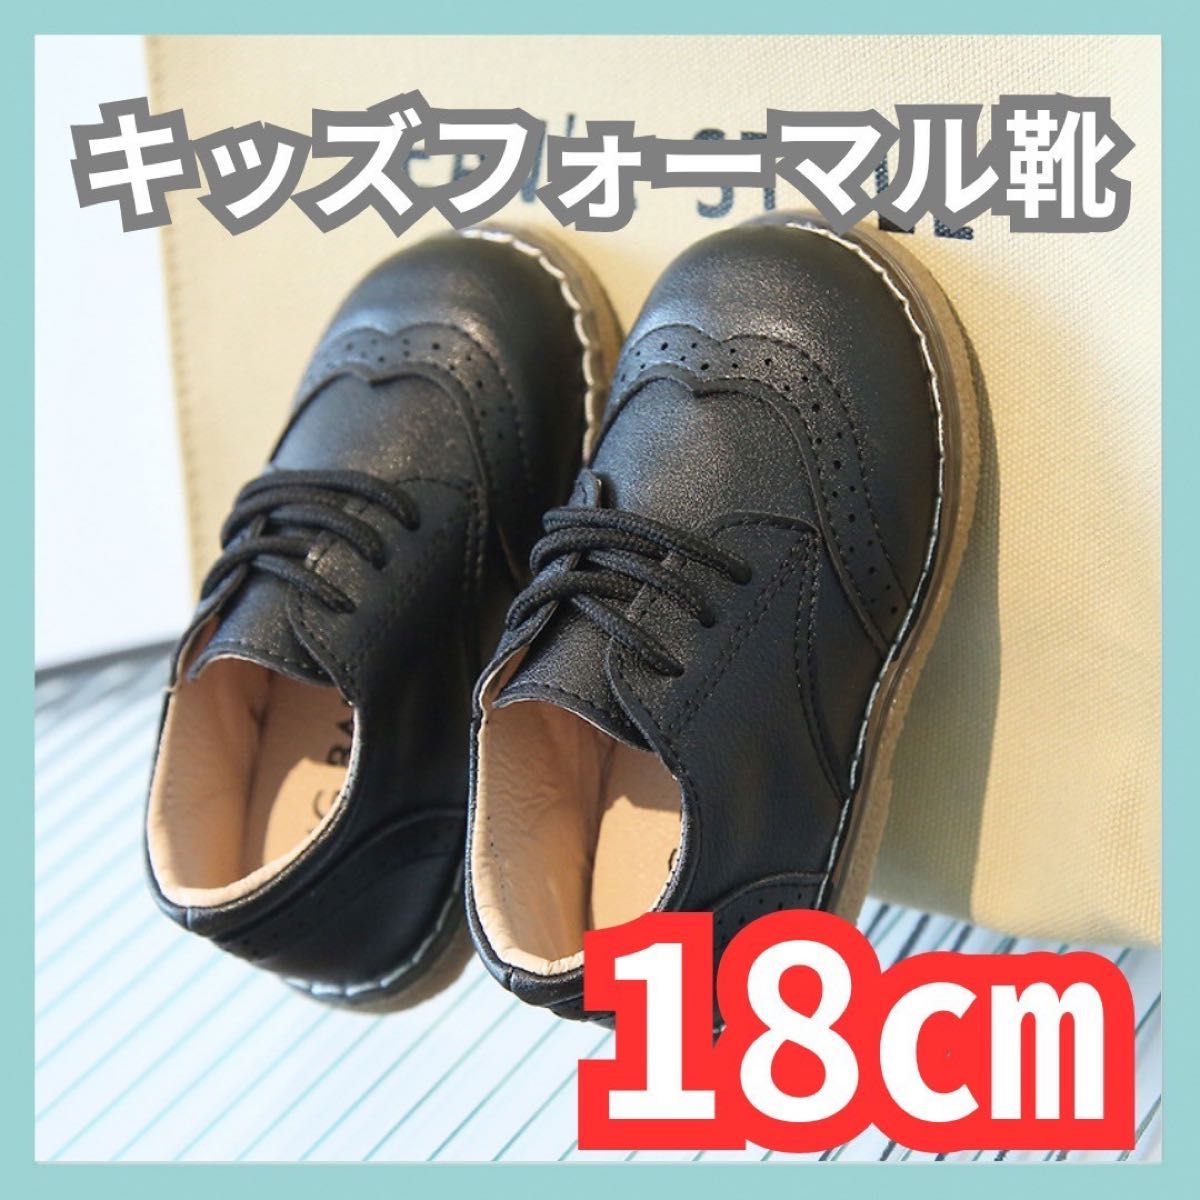 キッズ靴 18cm (29)フォーマル靴 男の子 女の子 レザー風 結婚式 入学式 発表会 七五三